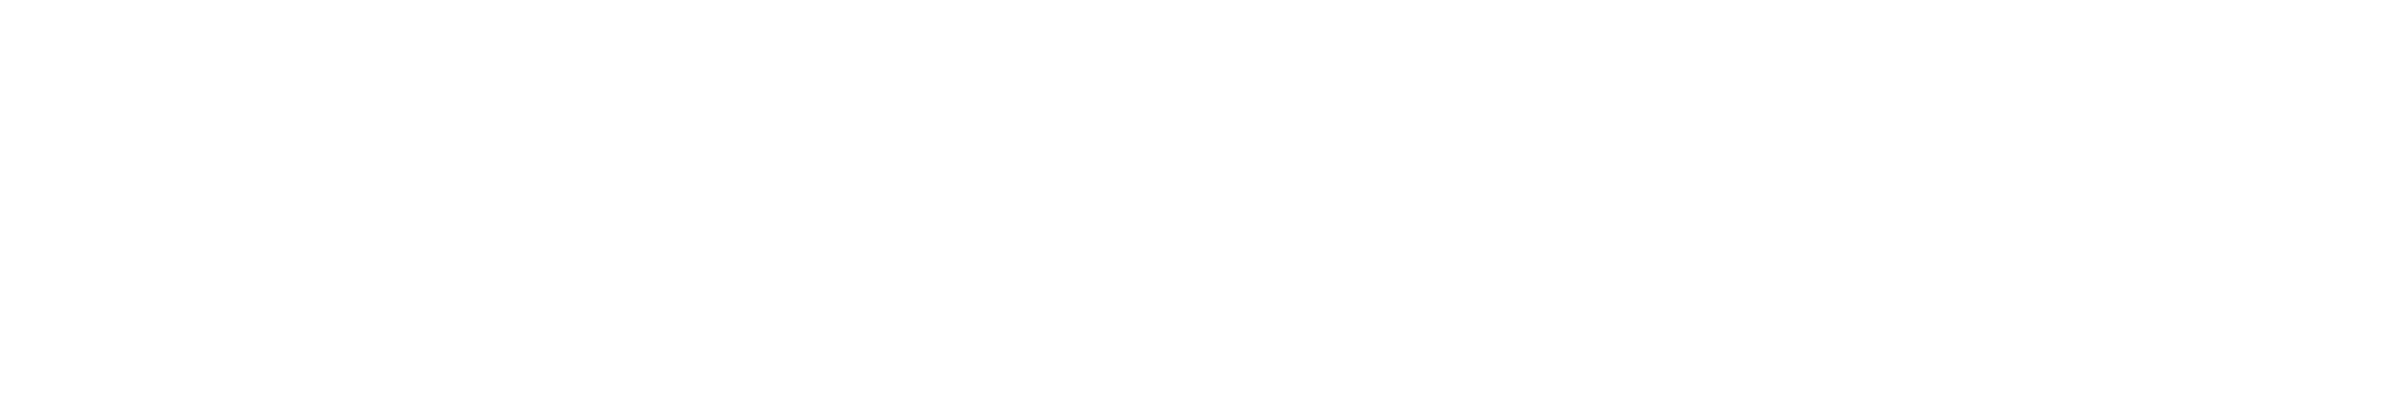 Phi Kappa Psi Foundation